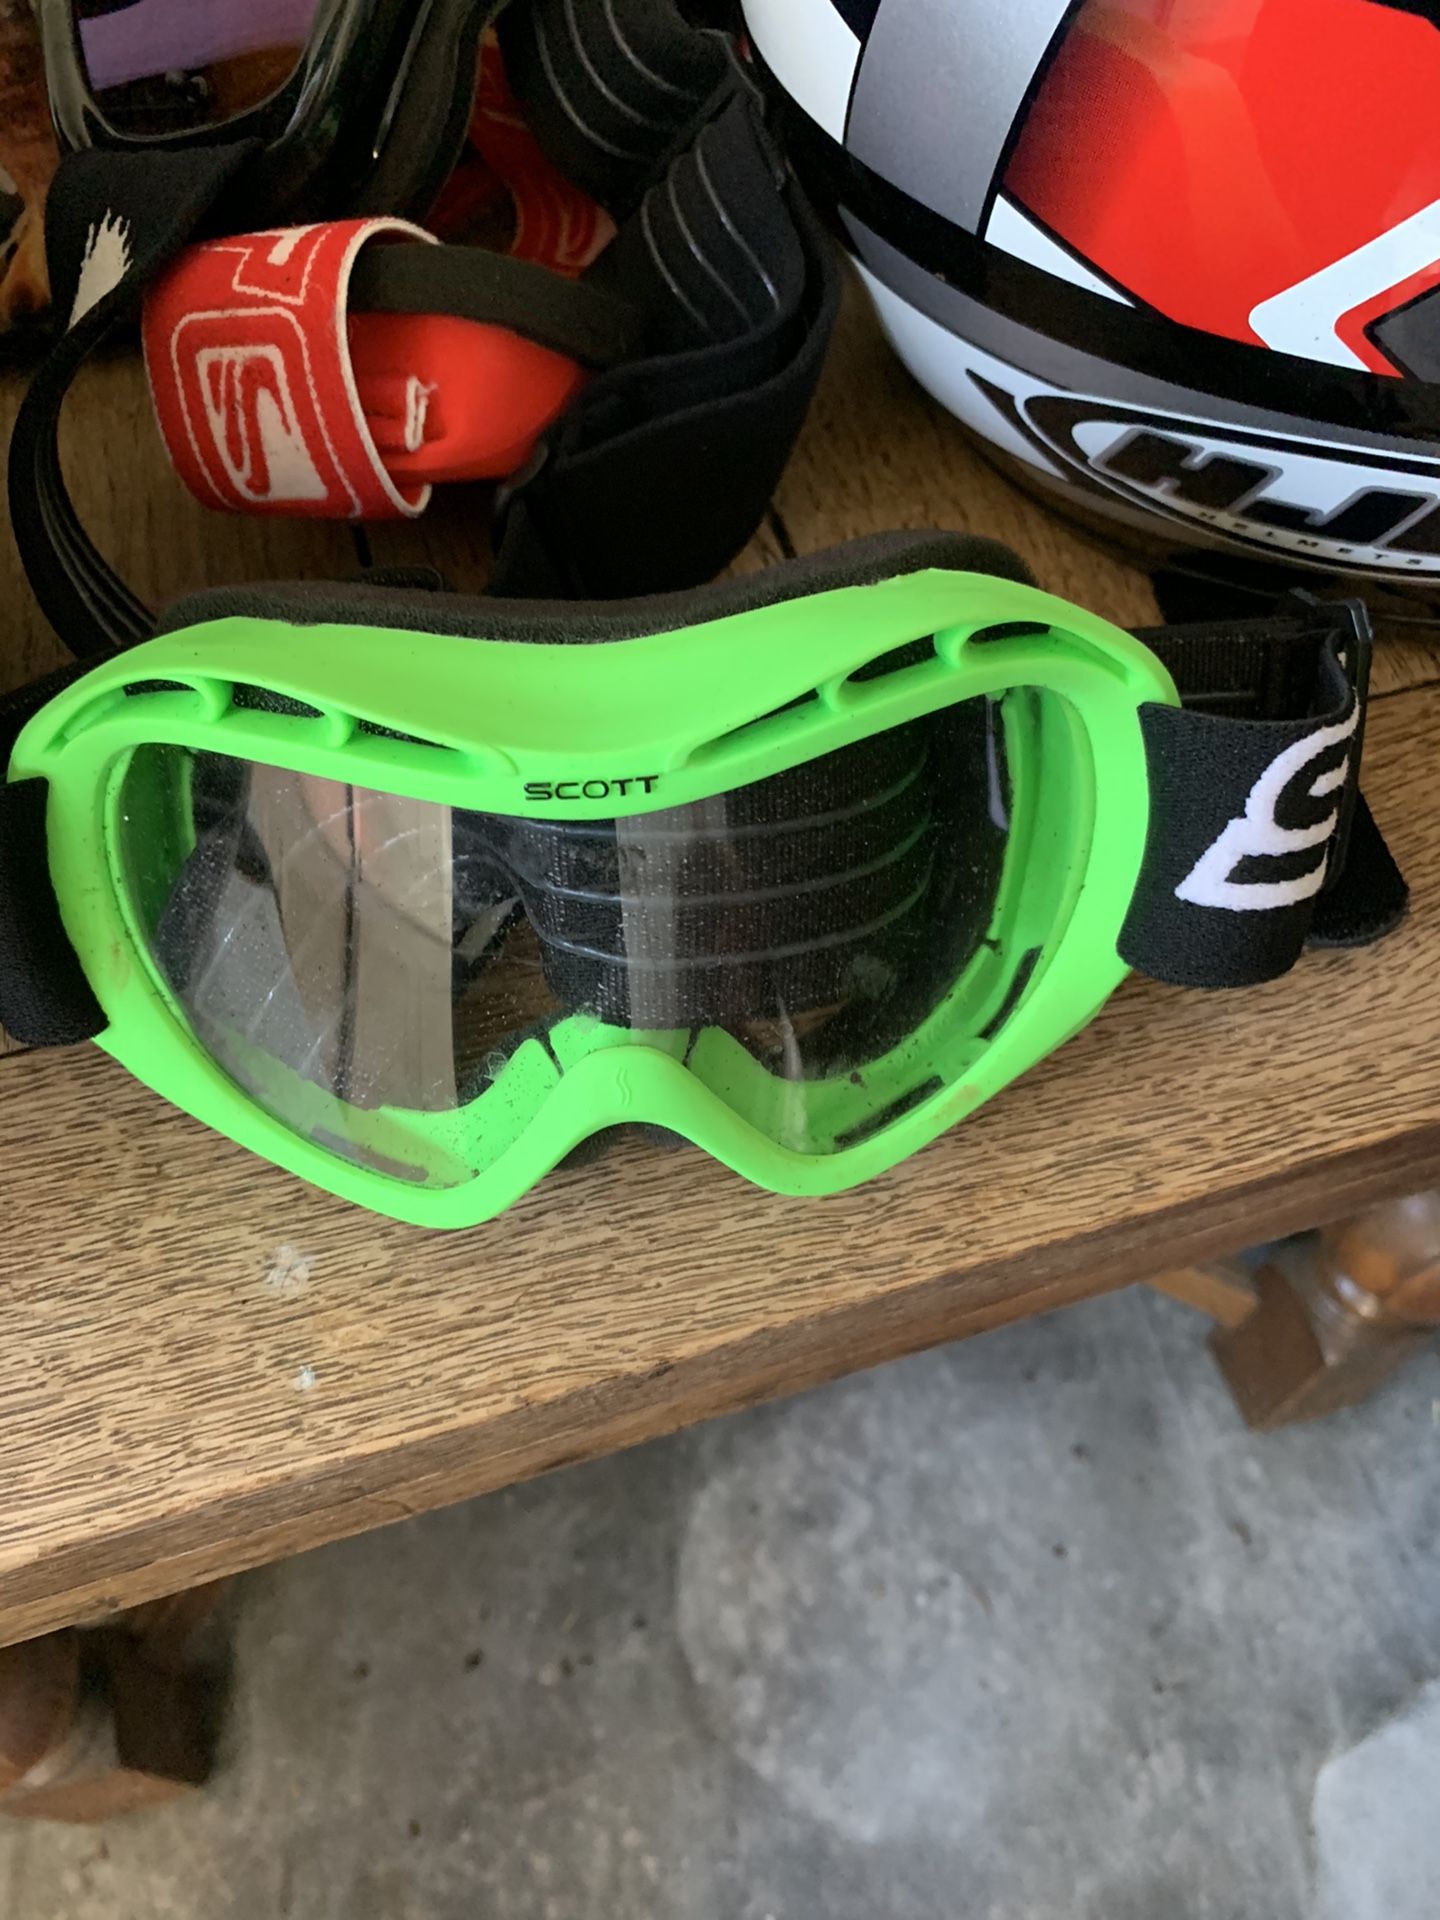 Scott racing goggles